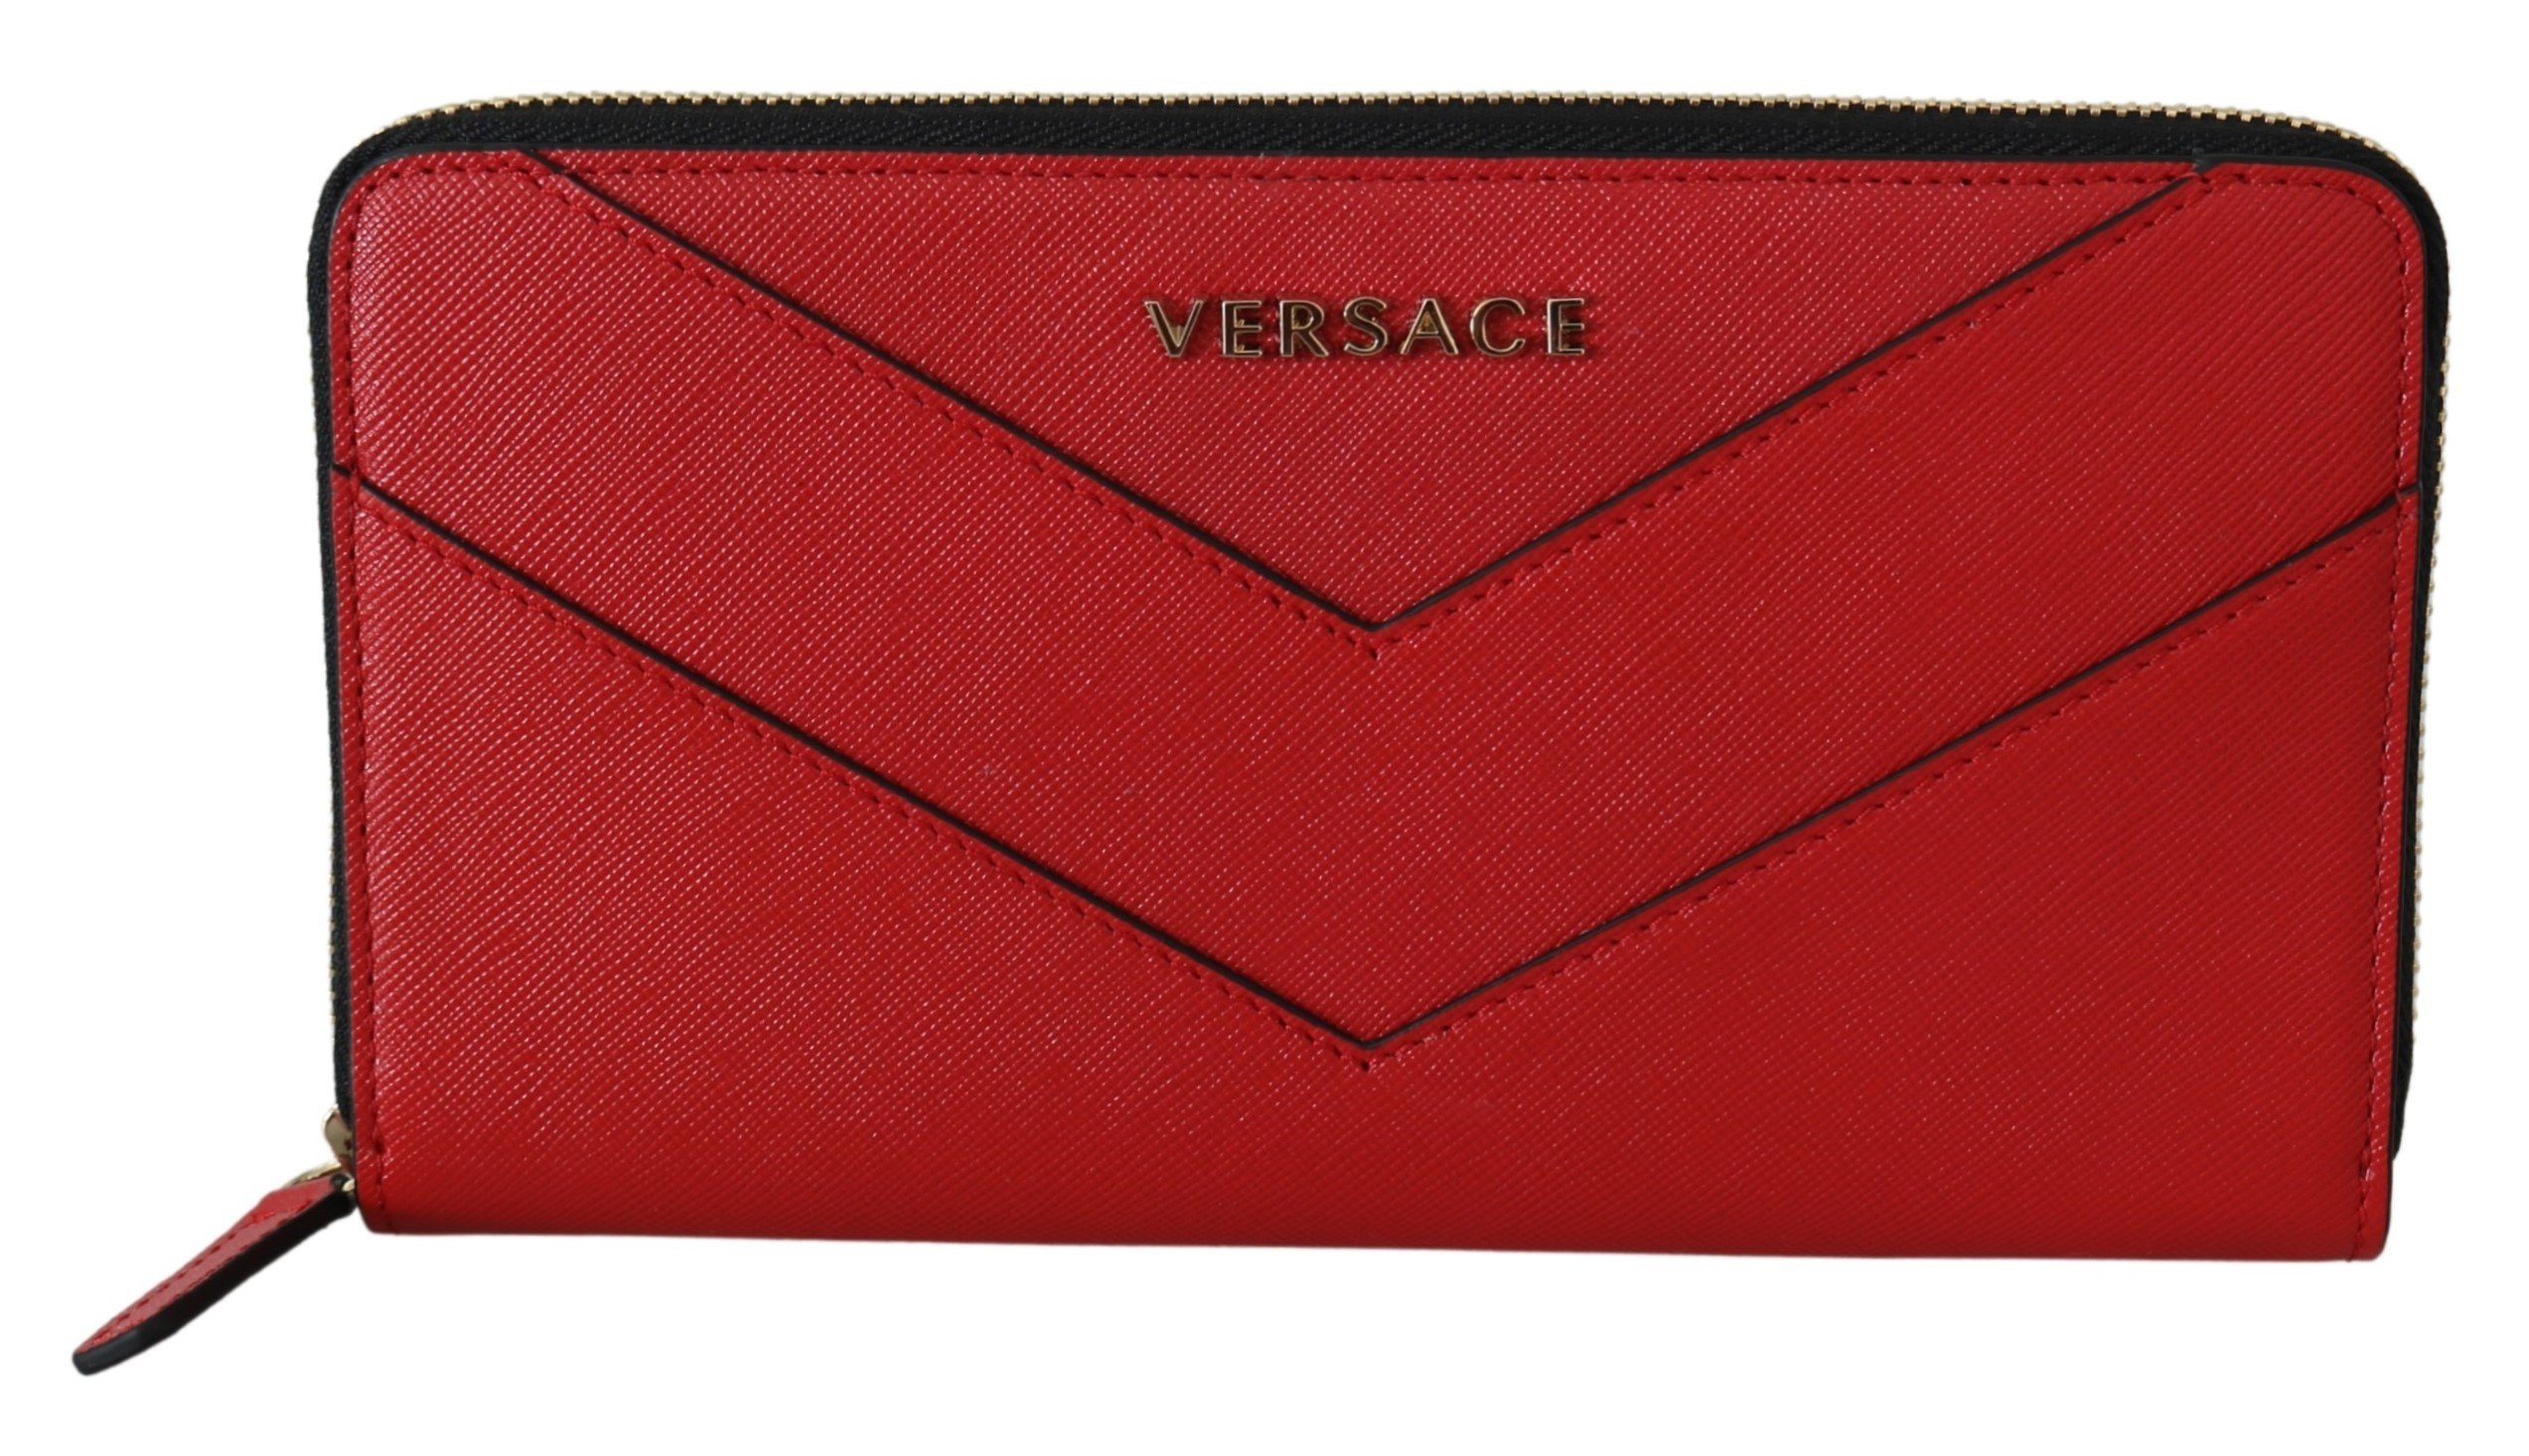 Versace Women's Zip Around Leather Wallet Red 8053850421251